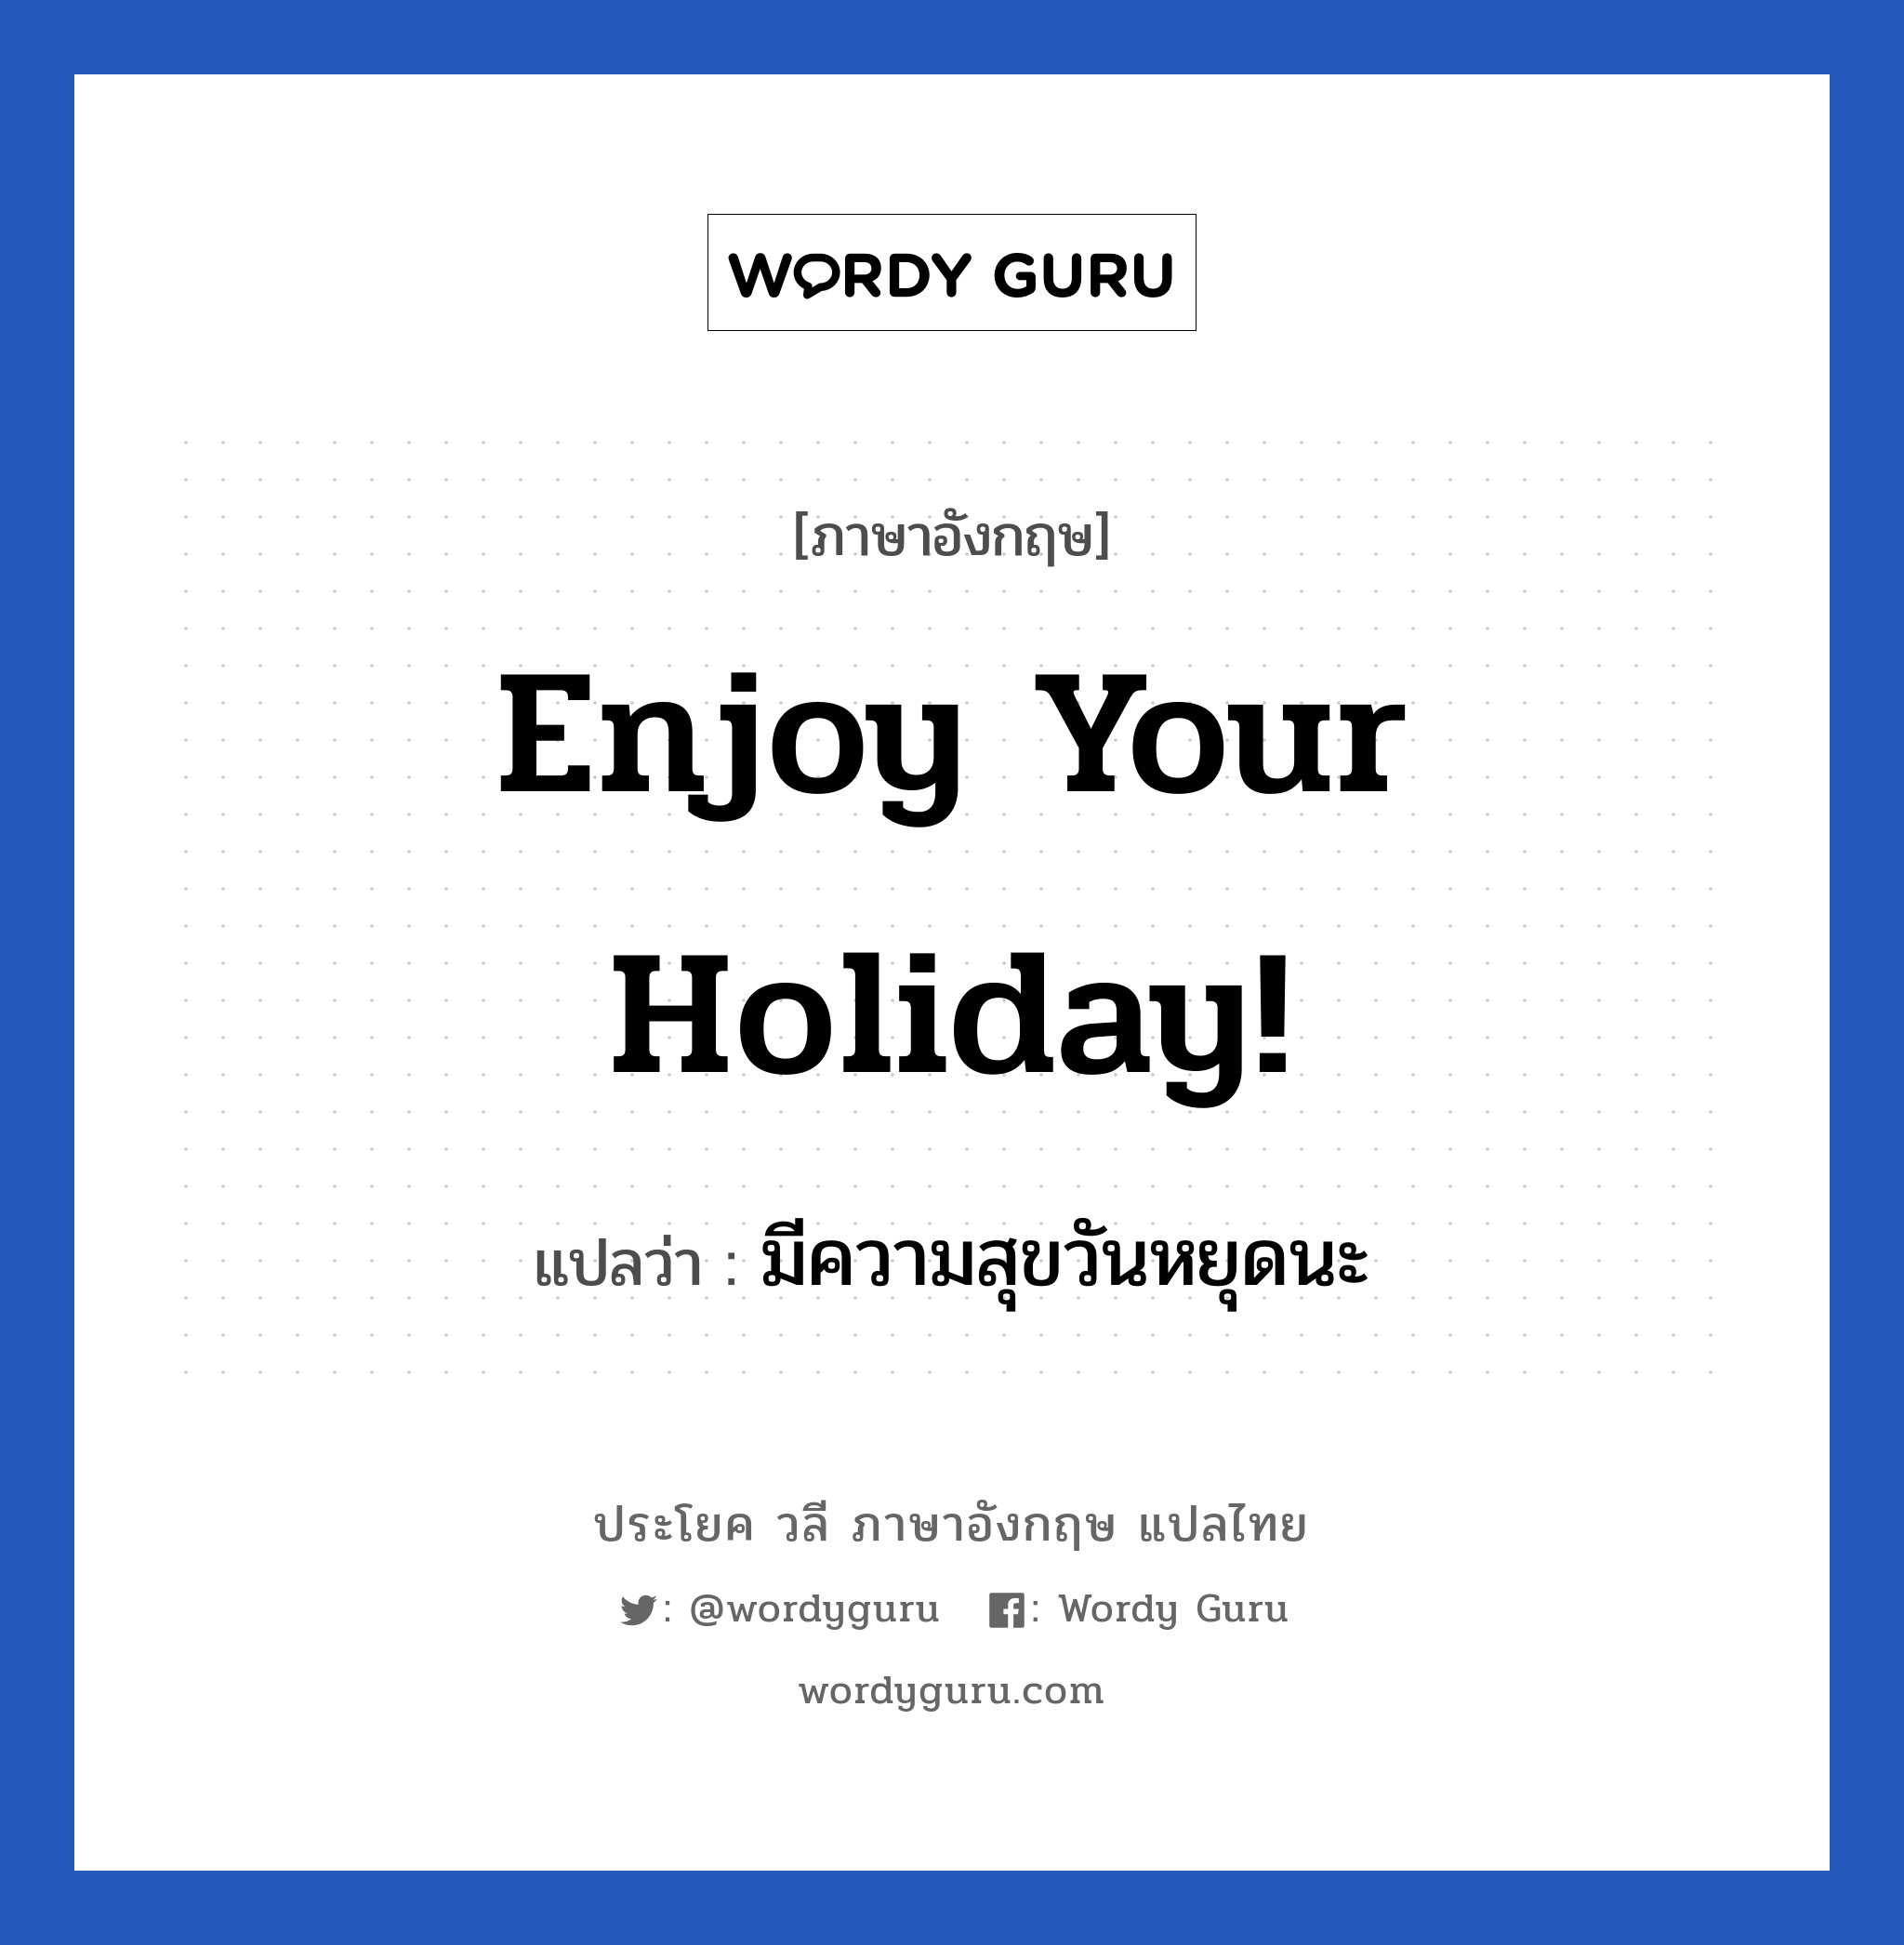 มีความสุขวันหยุดนะ ภาษาอังกฤษ?, วลีภาษาอังกฤษ มีความสุขวันหยุดนะ แปลว่า Enjoy your holiday! หมวด วลีทั่วไป